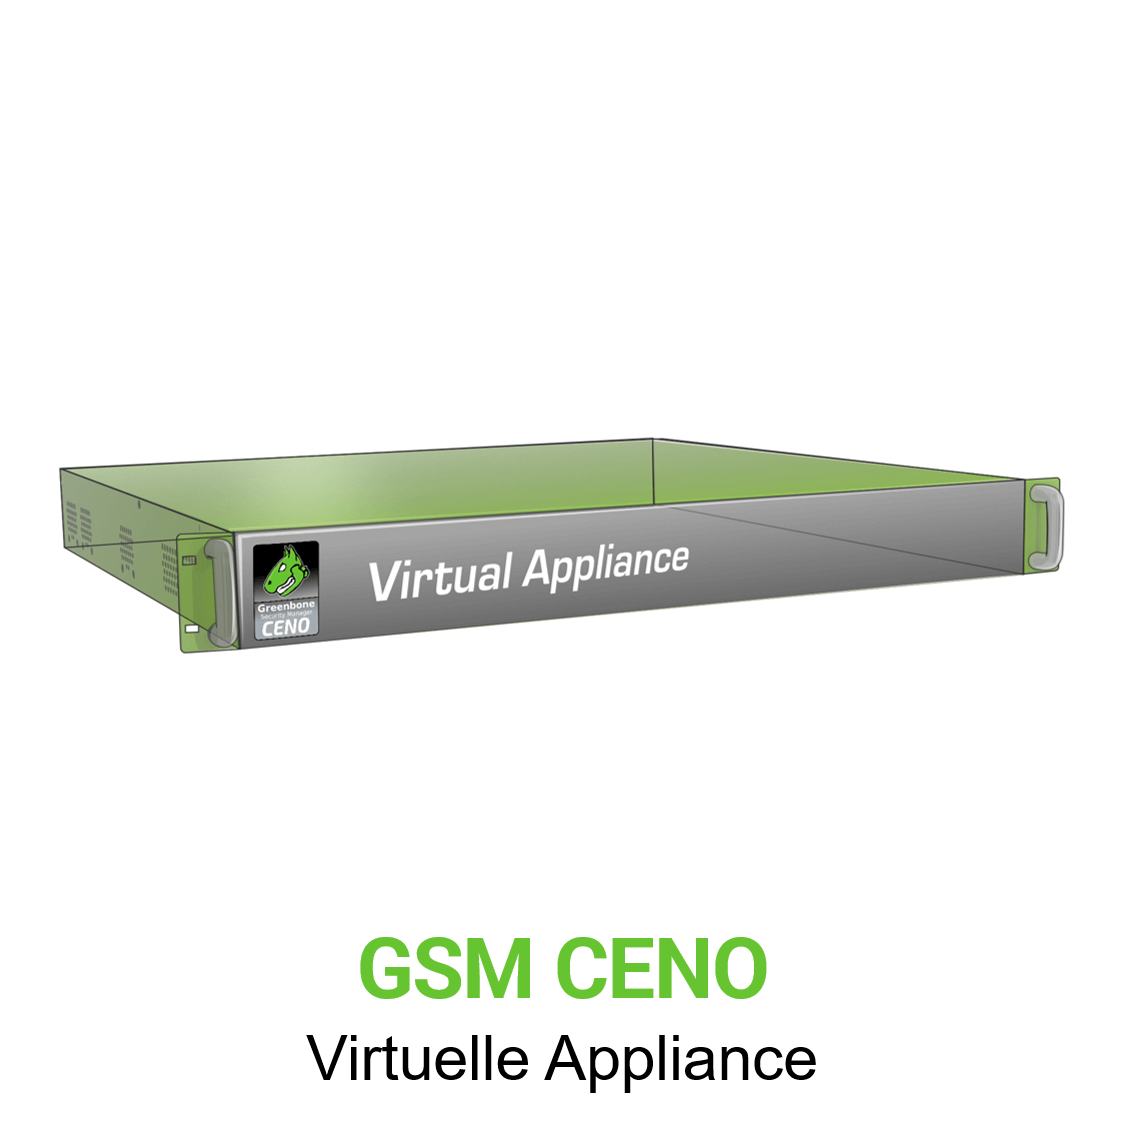 Greenbone GSM-CENO Virtuelle Appliance Vorschaubild ohne Greenbone logo mit Modellbezeichnung